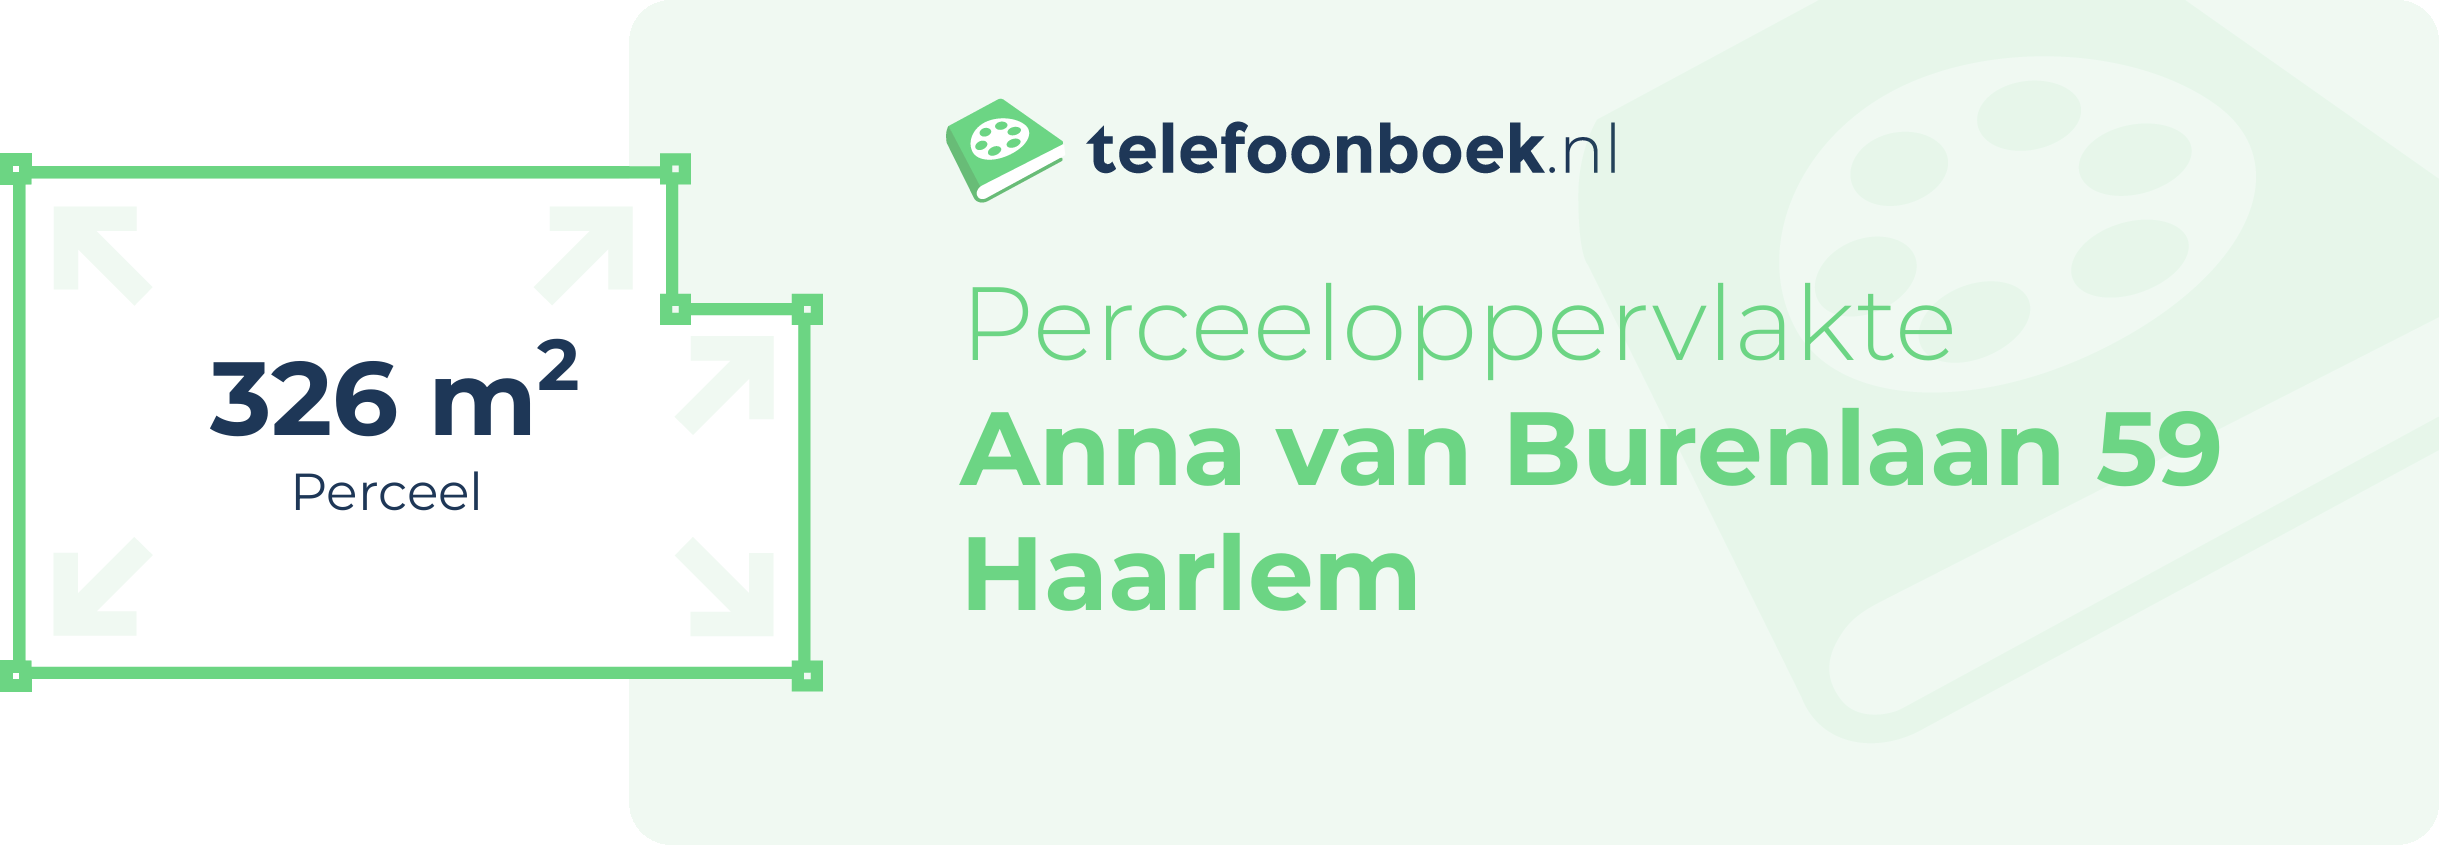 Perceeloppervlakte Anna Van Burenlaan 59 Haarlem